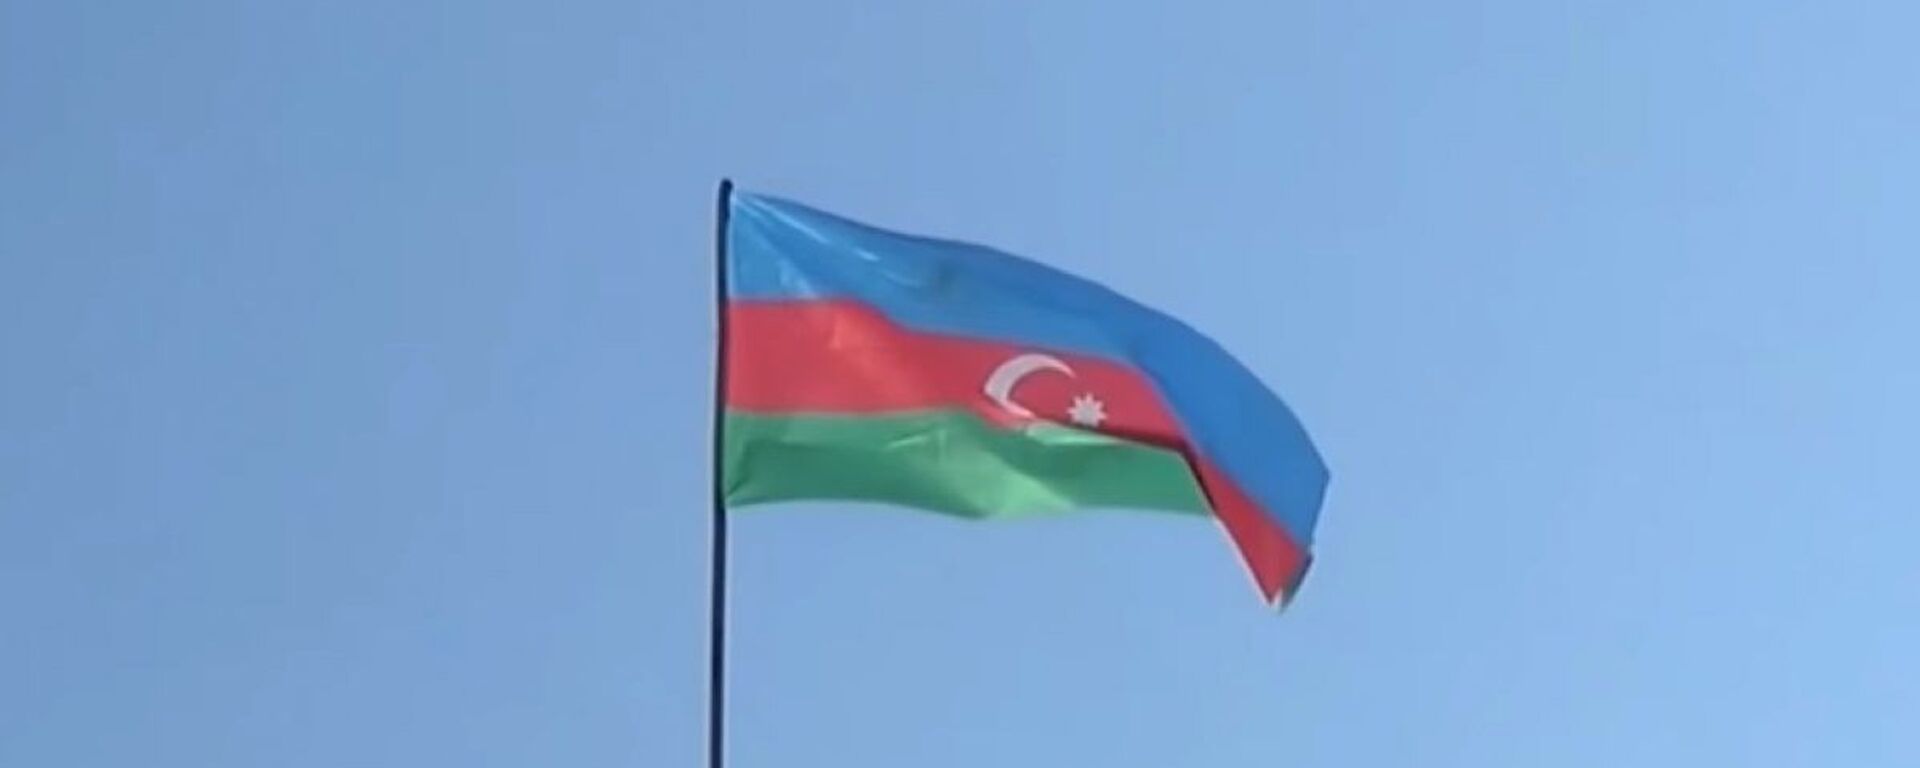 Azerbaycan bayrağı - Sputnik Türkiye, 1920, 29.05.2021